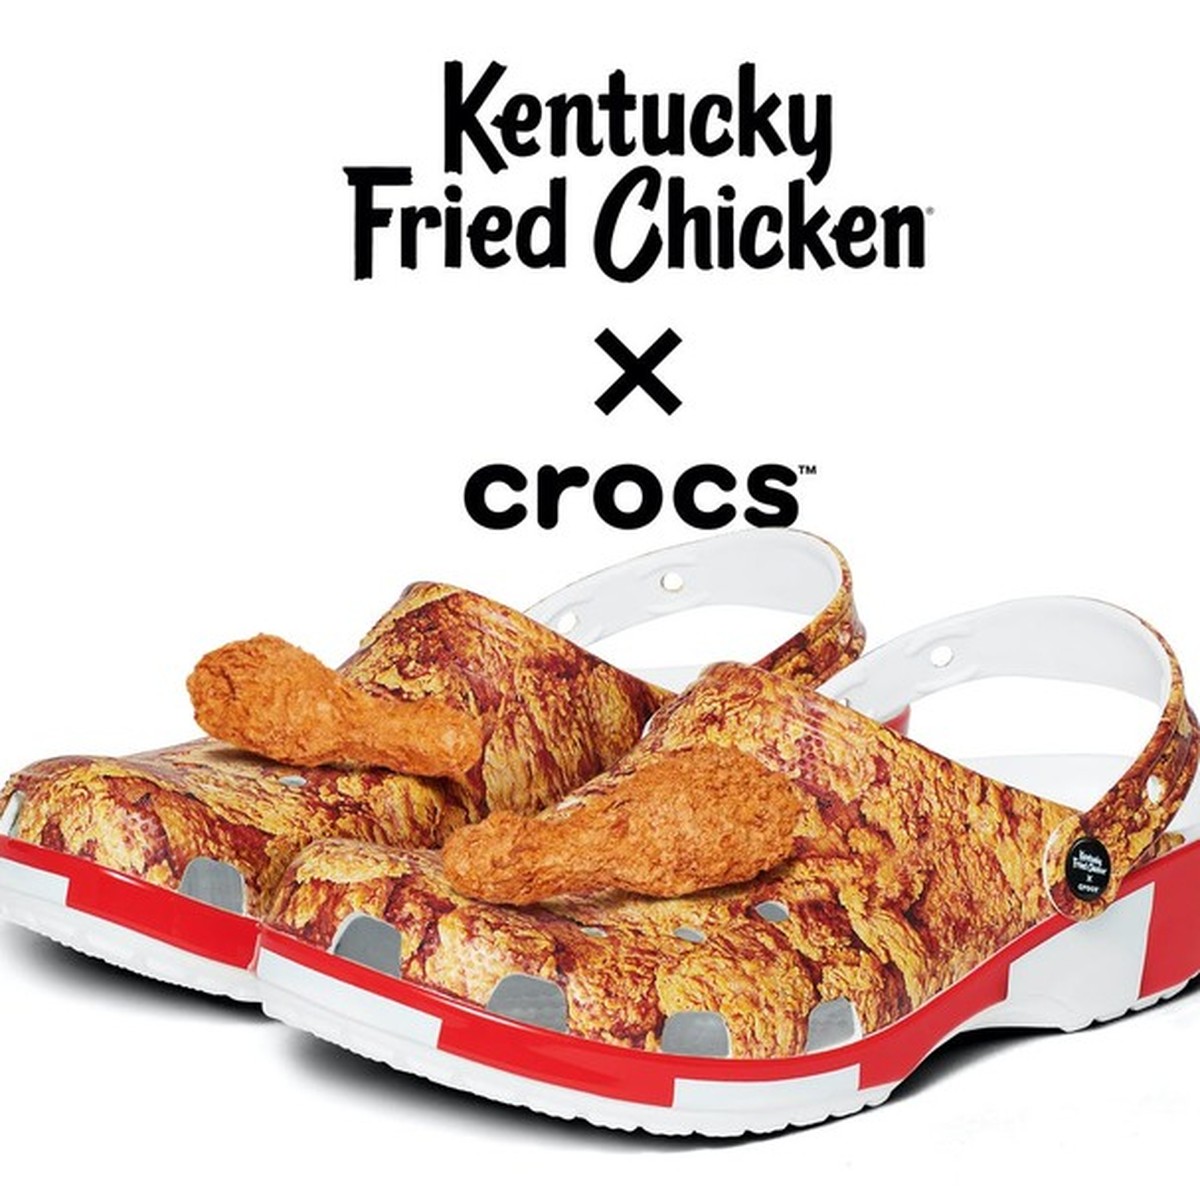 Crocs de frango frito existe — e nós estamos impactadas com essa informação  | News | Glamour